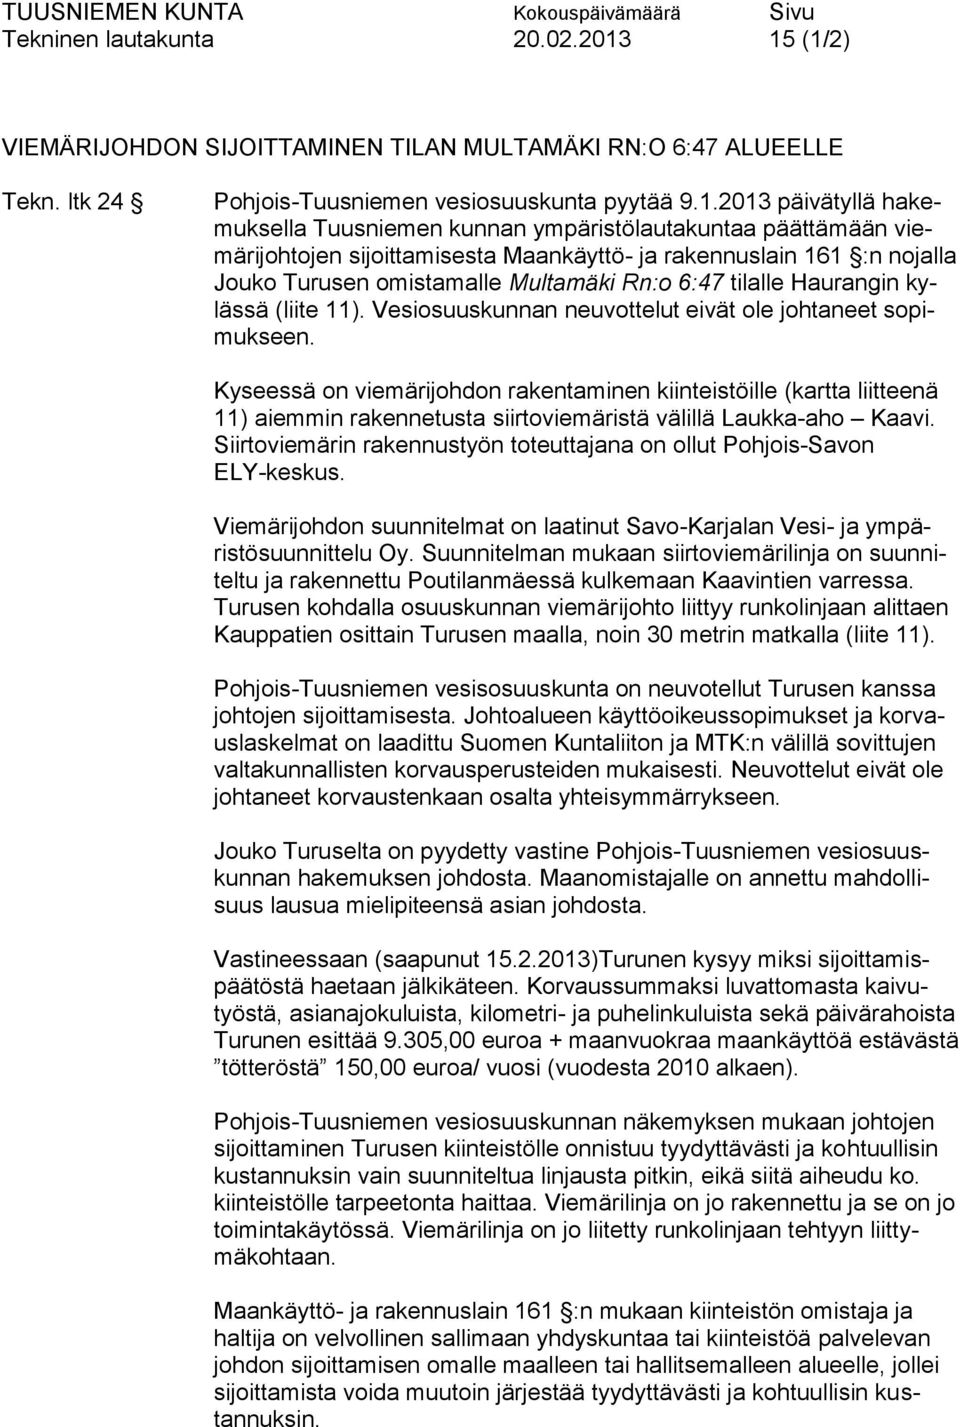 päättämään viemärijohtojen sijoittamisesta Maankäyttö- ja rakennuslain 161 :n nojalla Jouko Turusen omistamalle Multamäki Rn:o 6:47 tilalle Haurangin kylässä (liite 11).